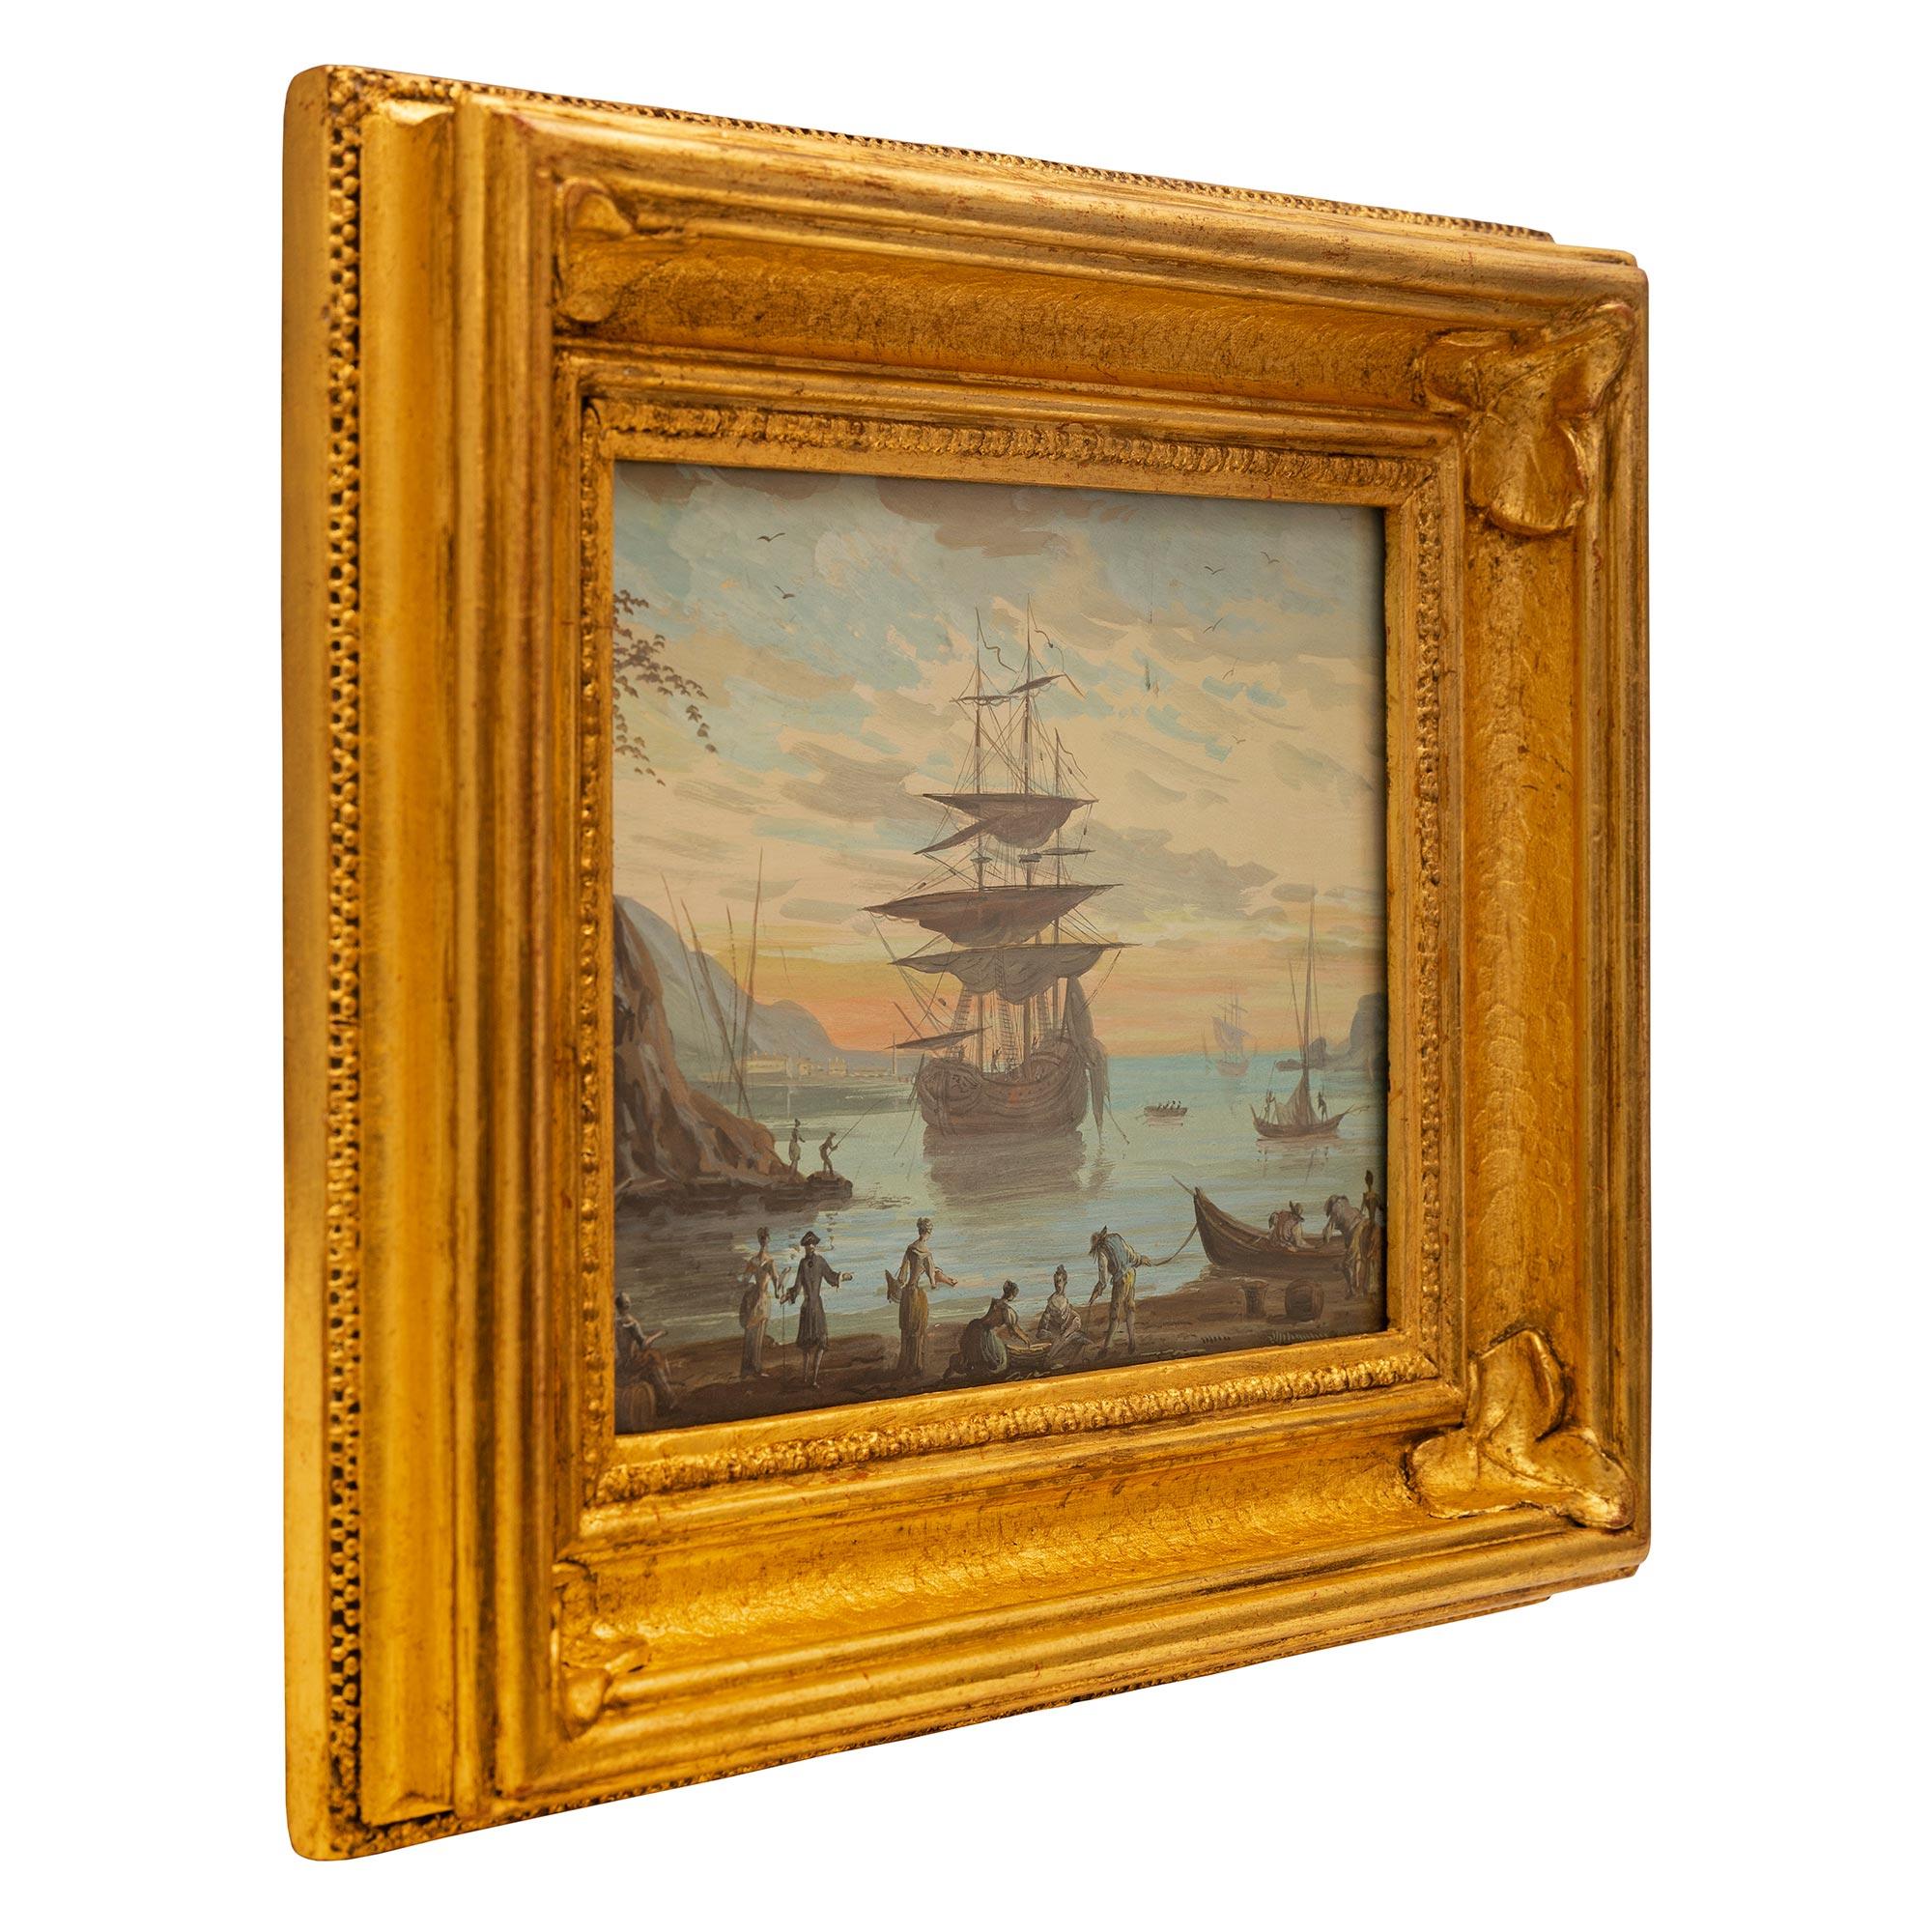 Une belle et charmante aquarelle italienne du 19ème siècle représentant la baie de Venise dans son cadre d'origine en bois doré. La peinture représente la baie de Venise au lever du soleil avec un magnifique ciel rouge en arrière-plan. Au centre se